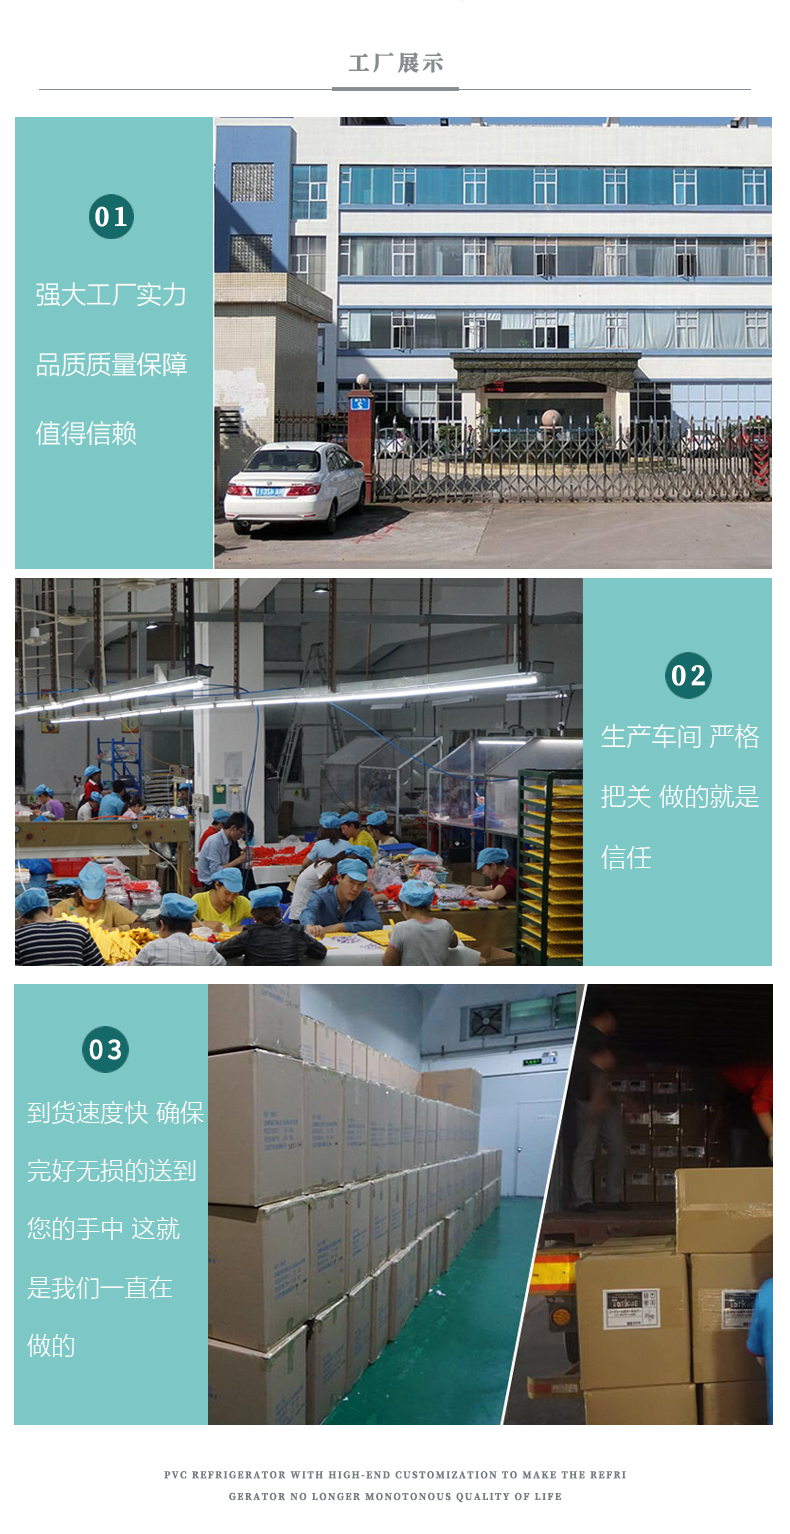 冰箱贴xiangqing-恢复的_09.jpg